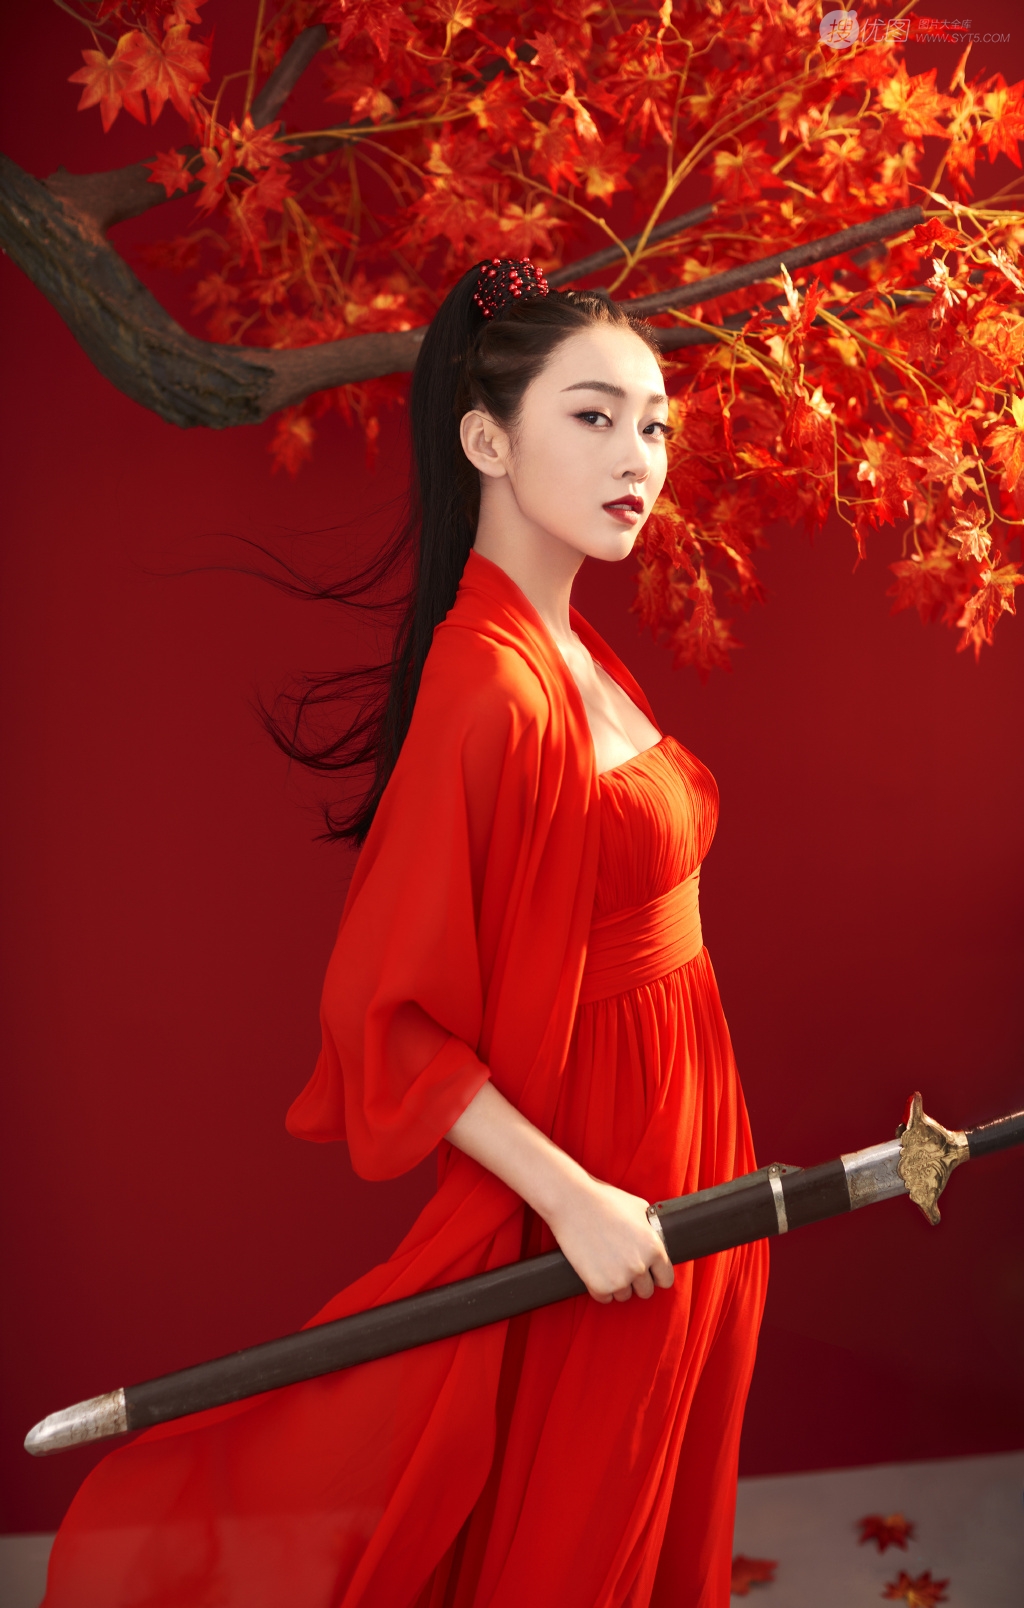 美女宣璐鲜艳红色古装打扮枫叶树下论剑写真美图图片